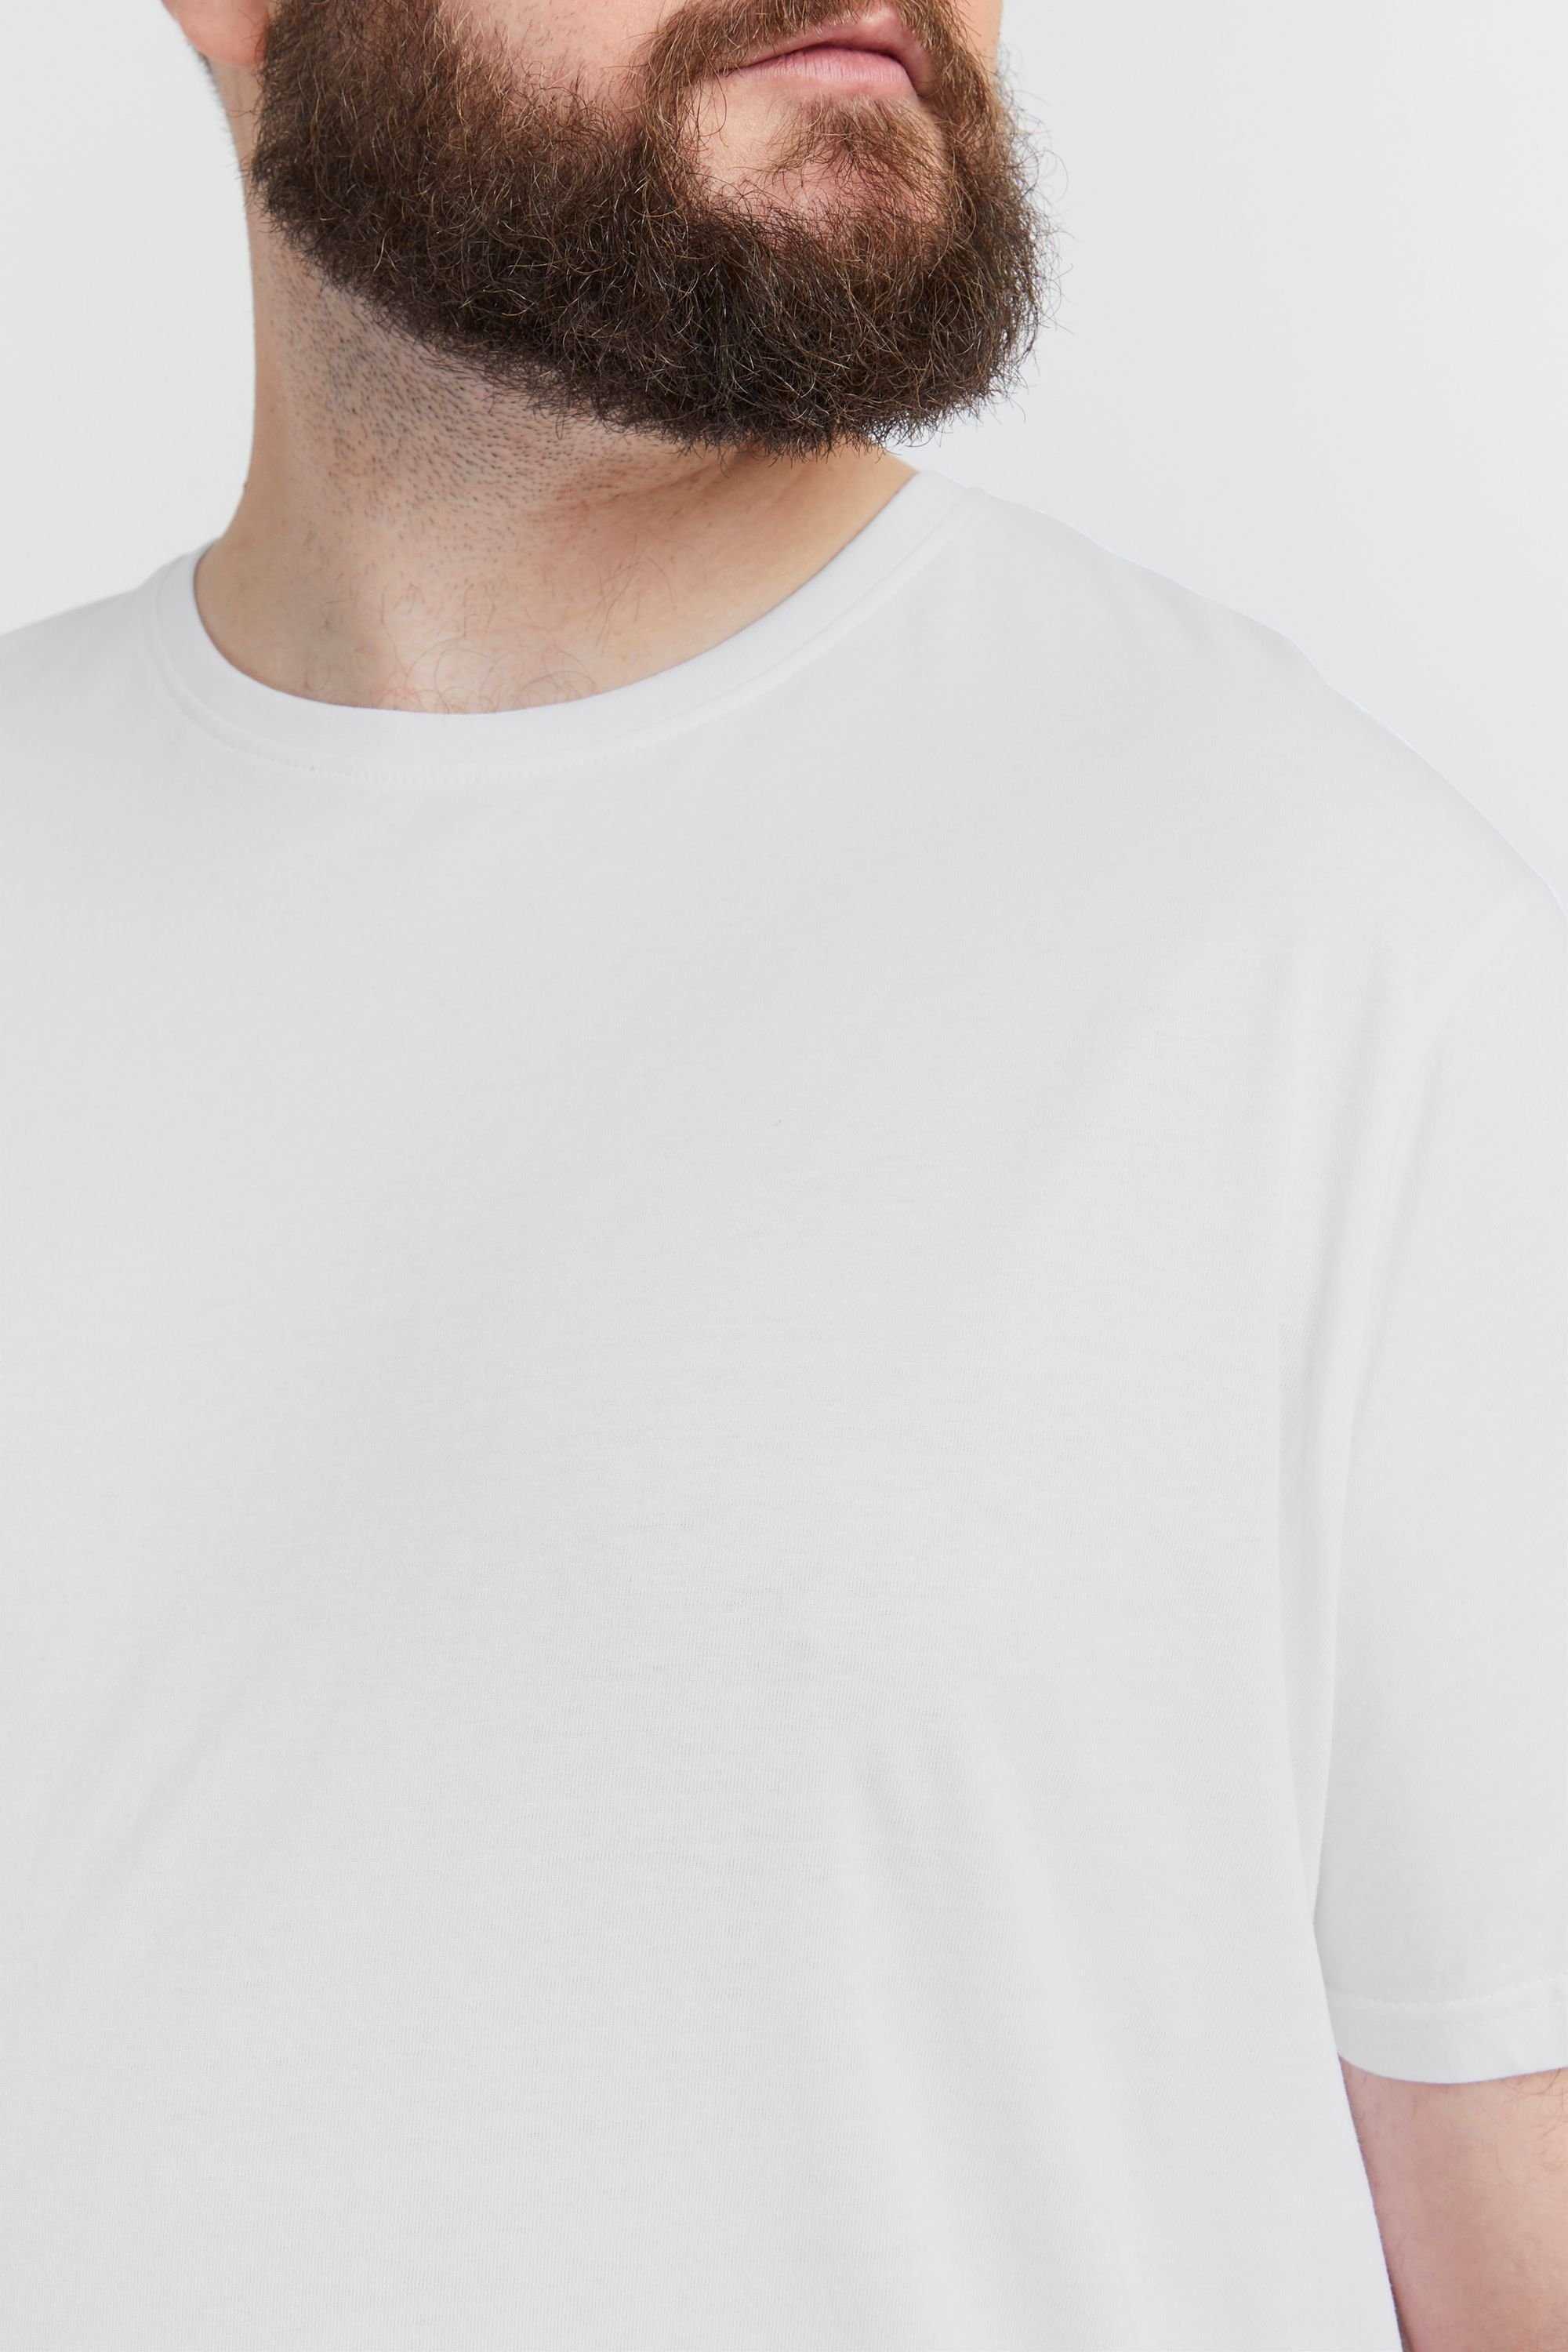 Solid T-Shirt SDBedonno BT White (110601)